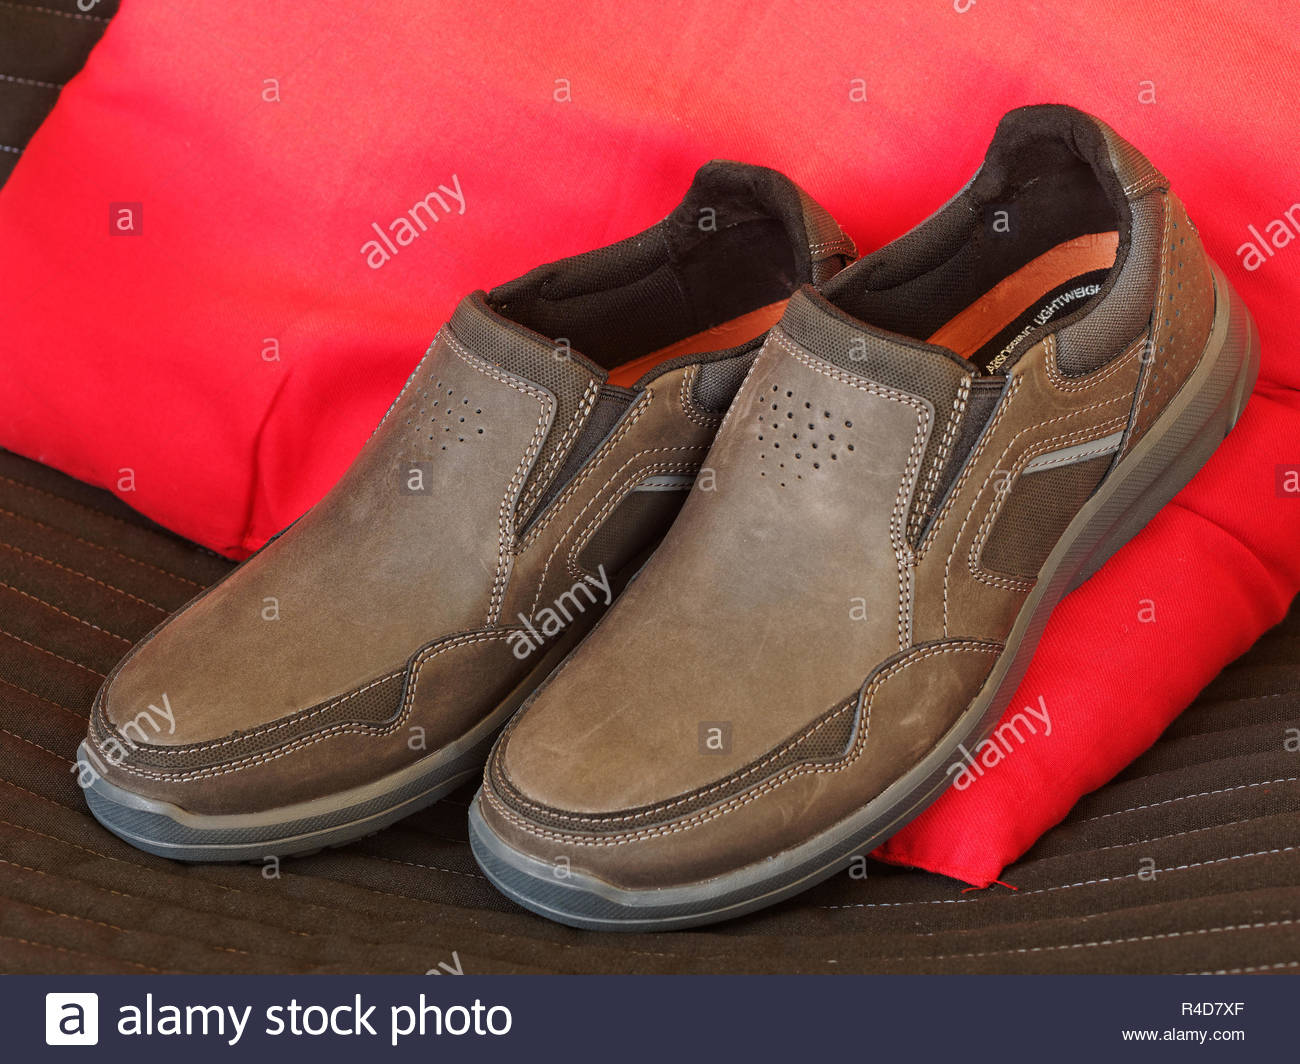 men's rockport shoes on sale